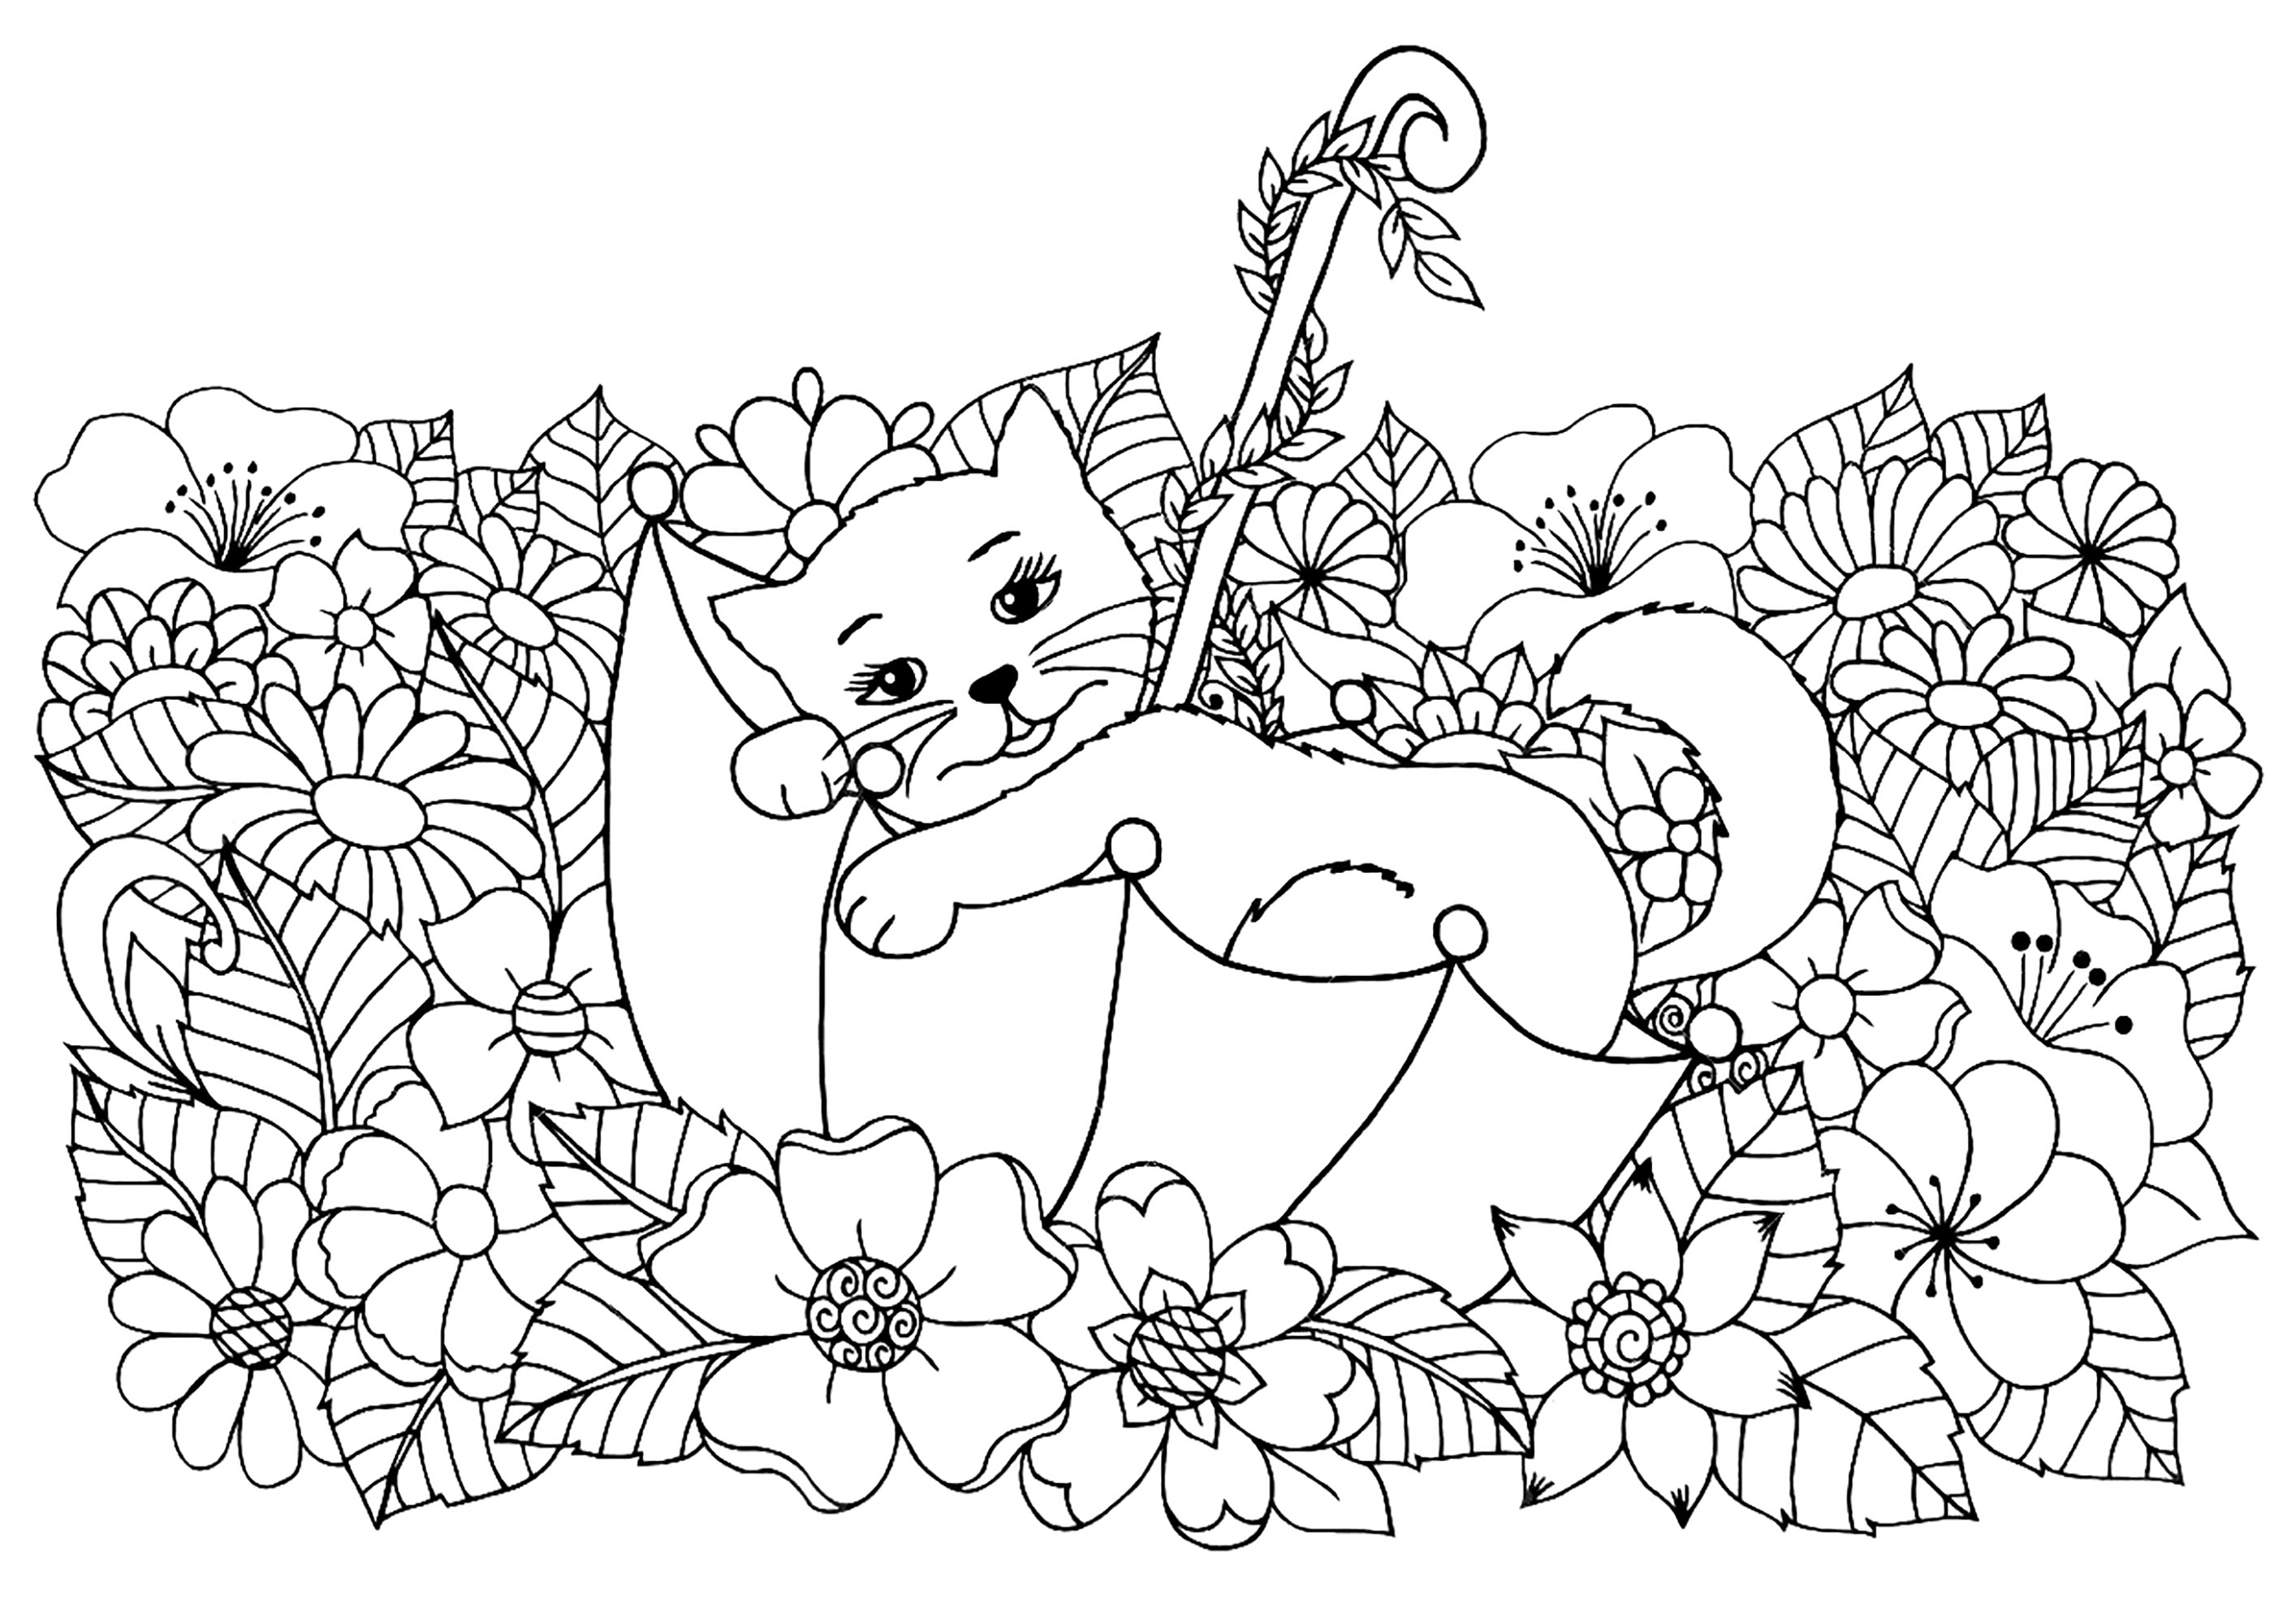 Lindo gatito descansando en una sombrilla, rodeado de hermosas flores